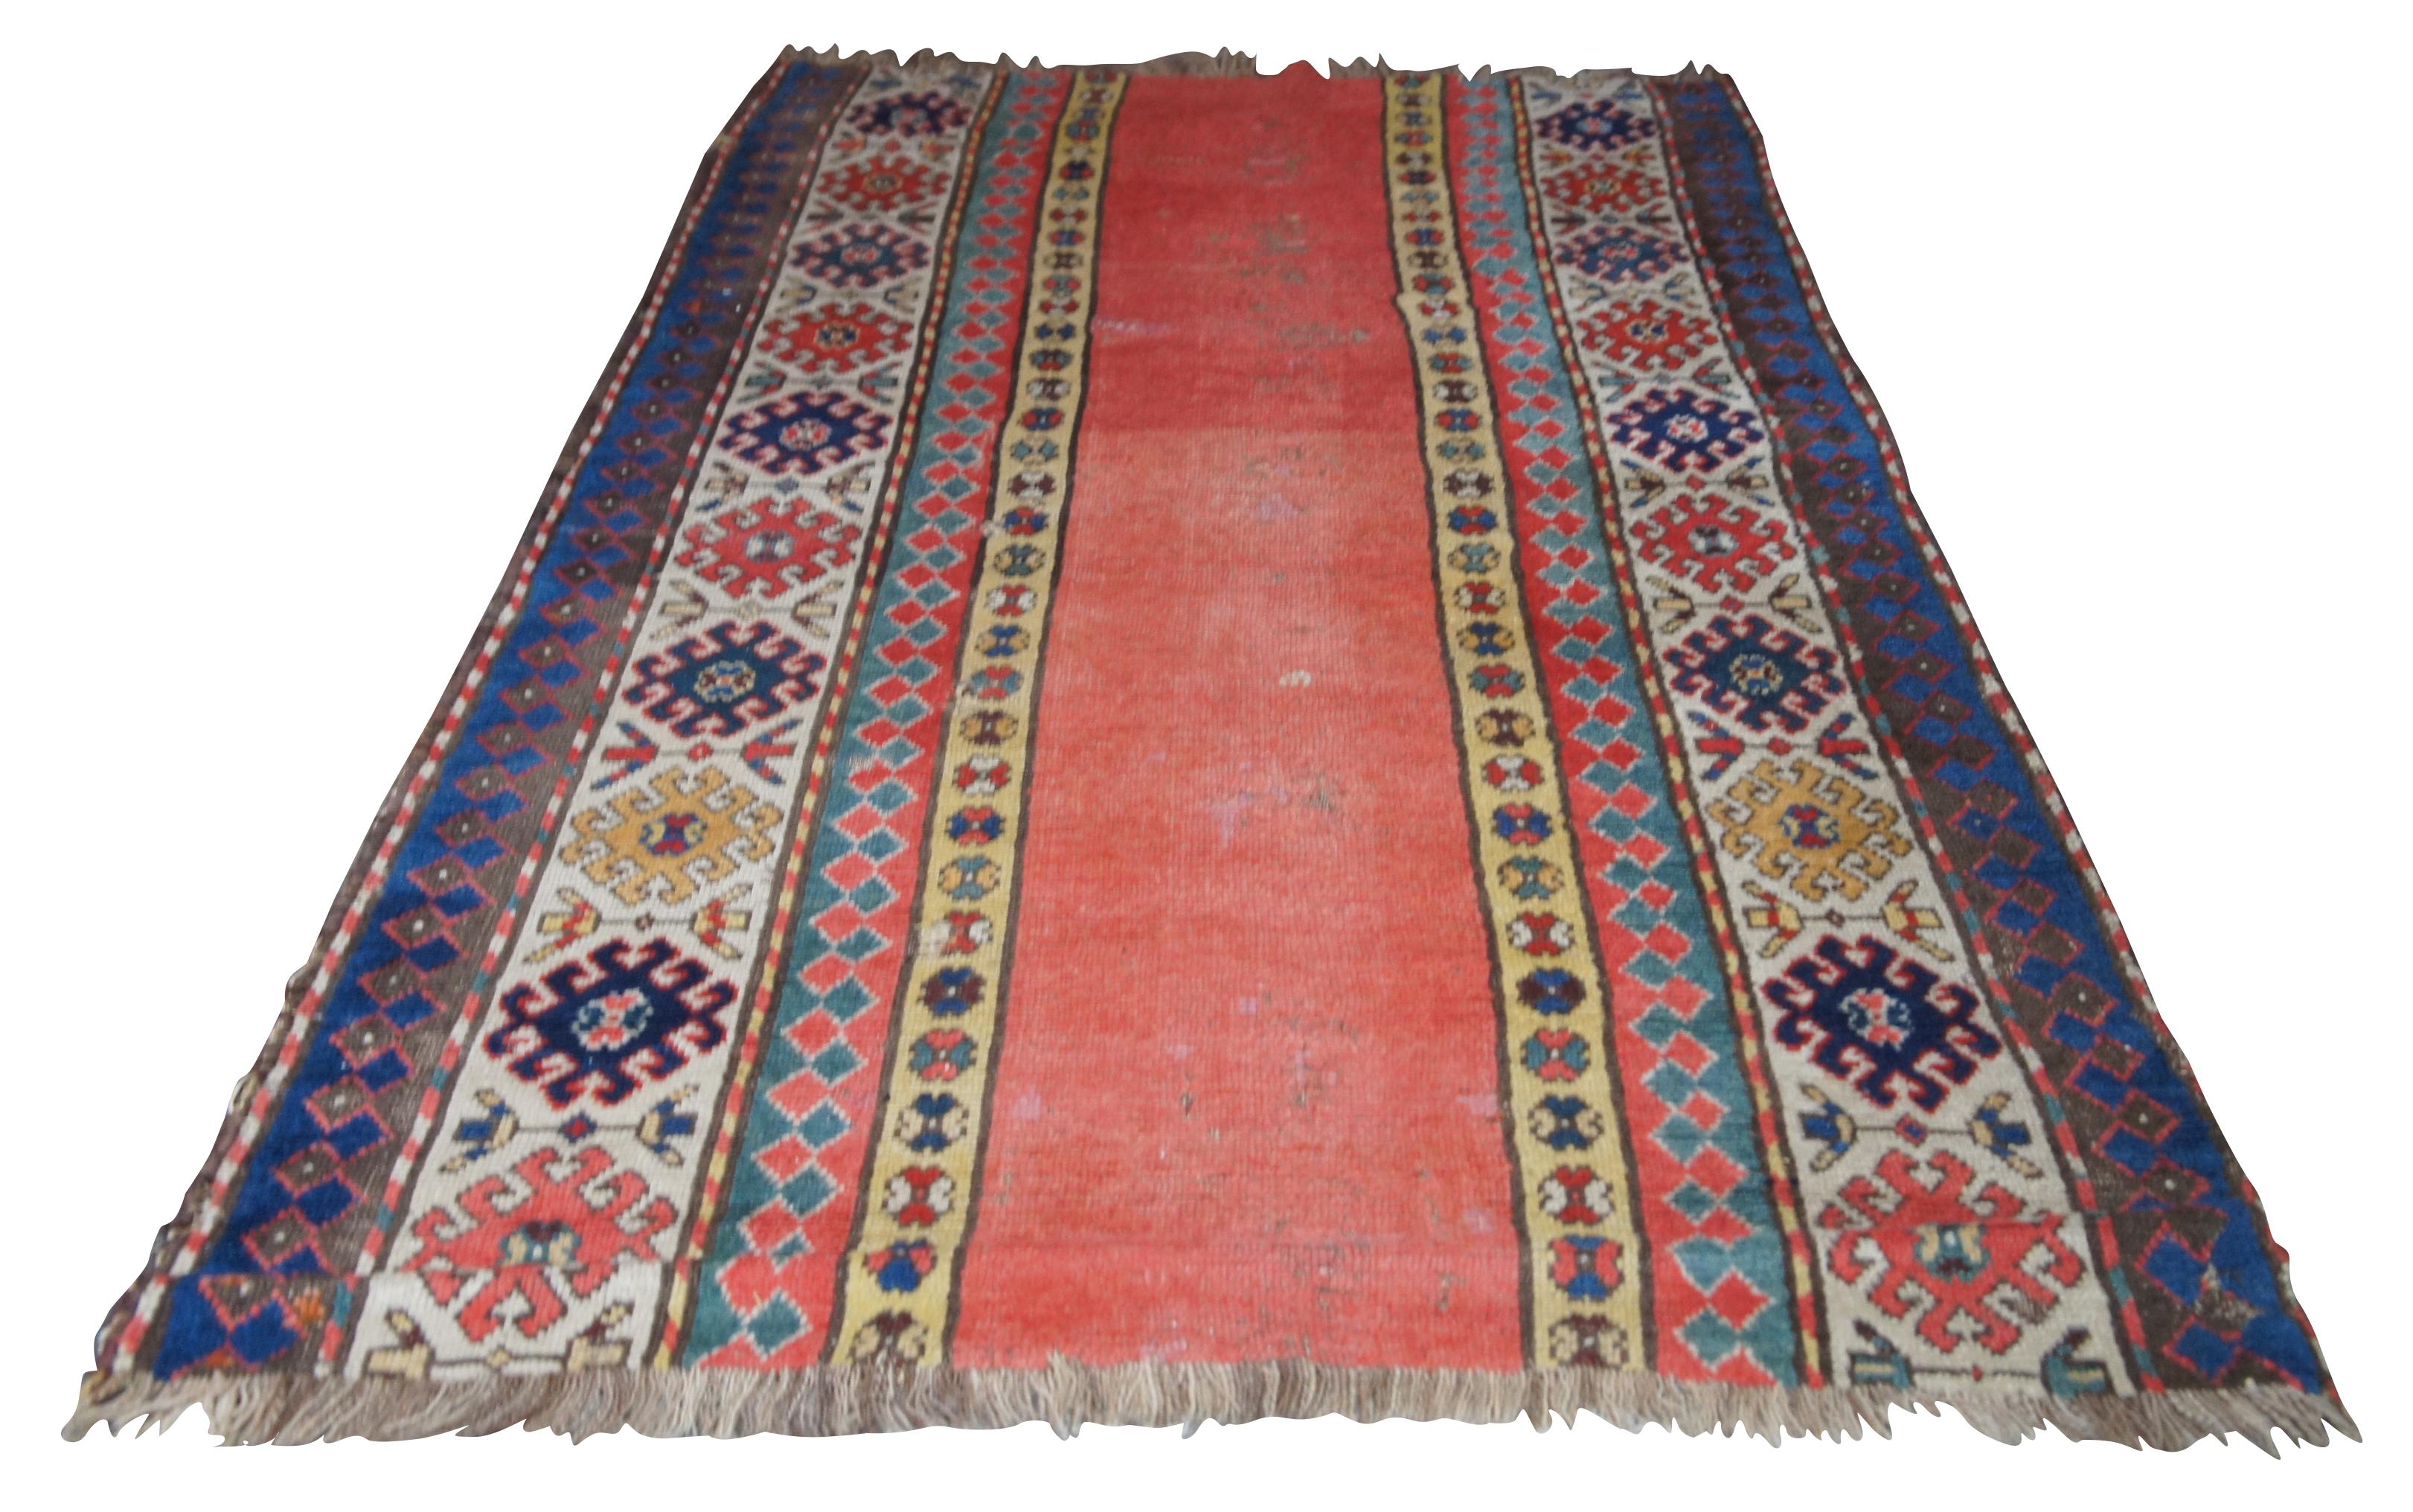 Islamic Antique Persian Kilim Area Rug Runner Carpet